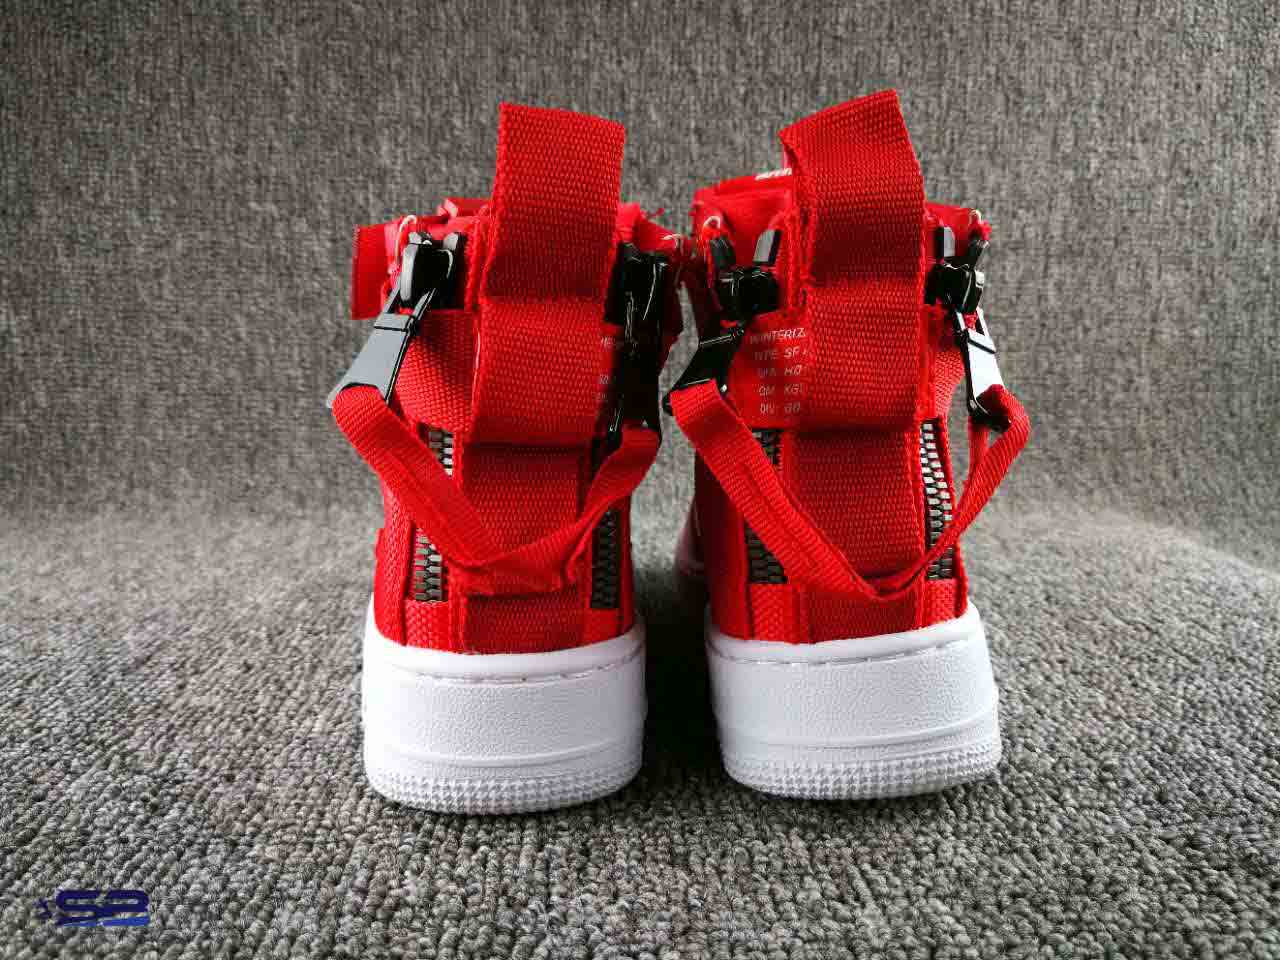  خرید  کفش کتانی نایک ایر فورس قرمز      Nike Air Force 1  Red